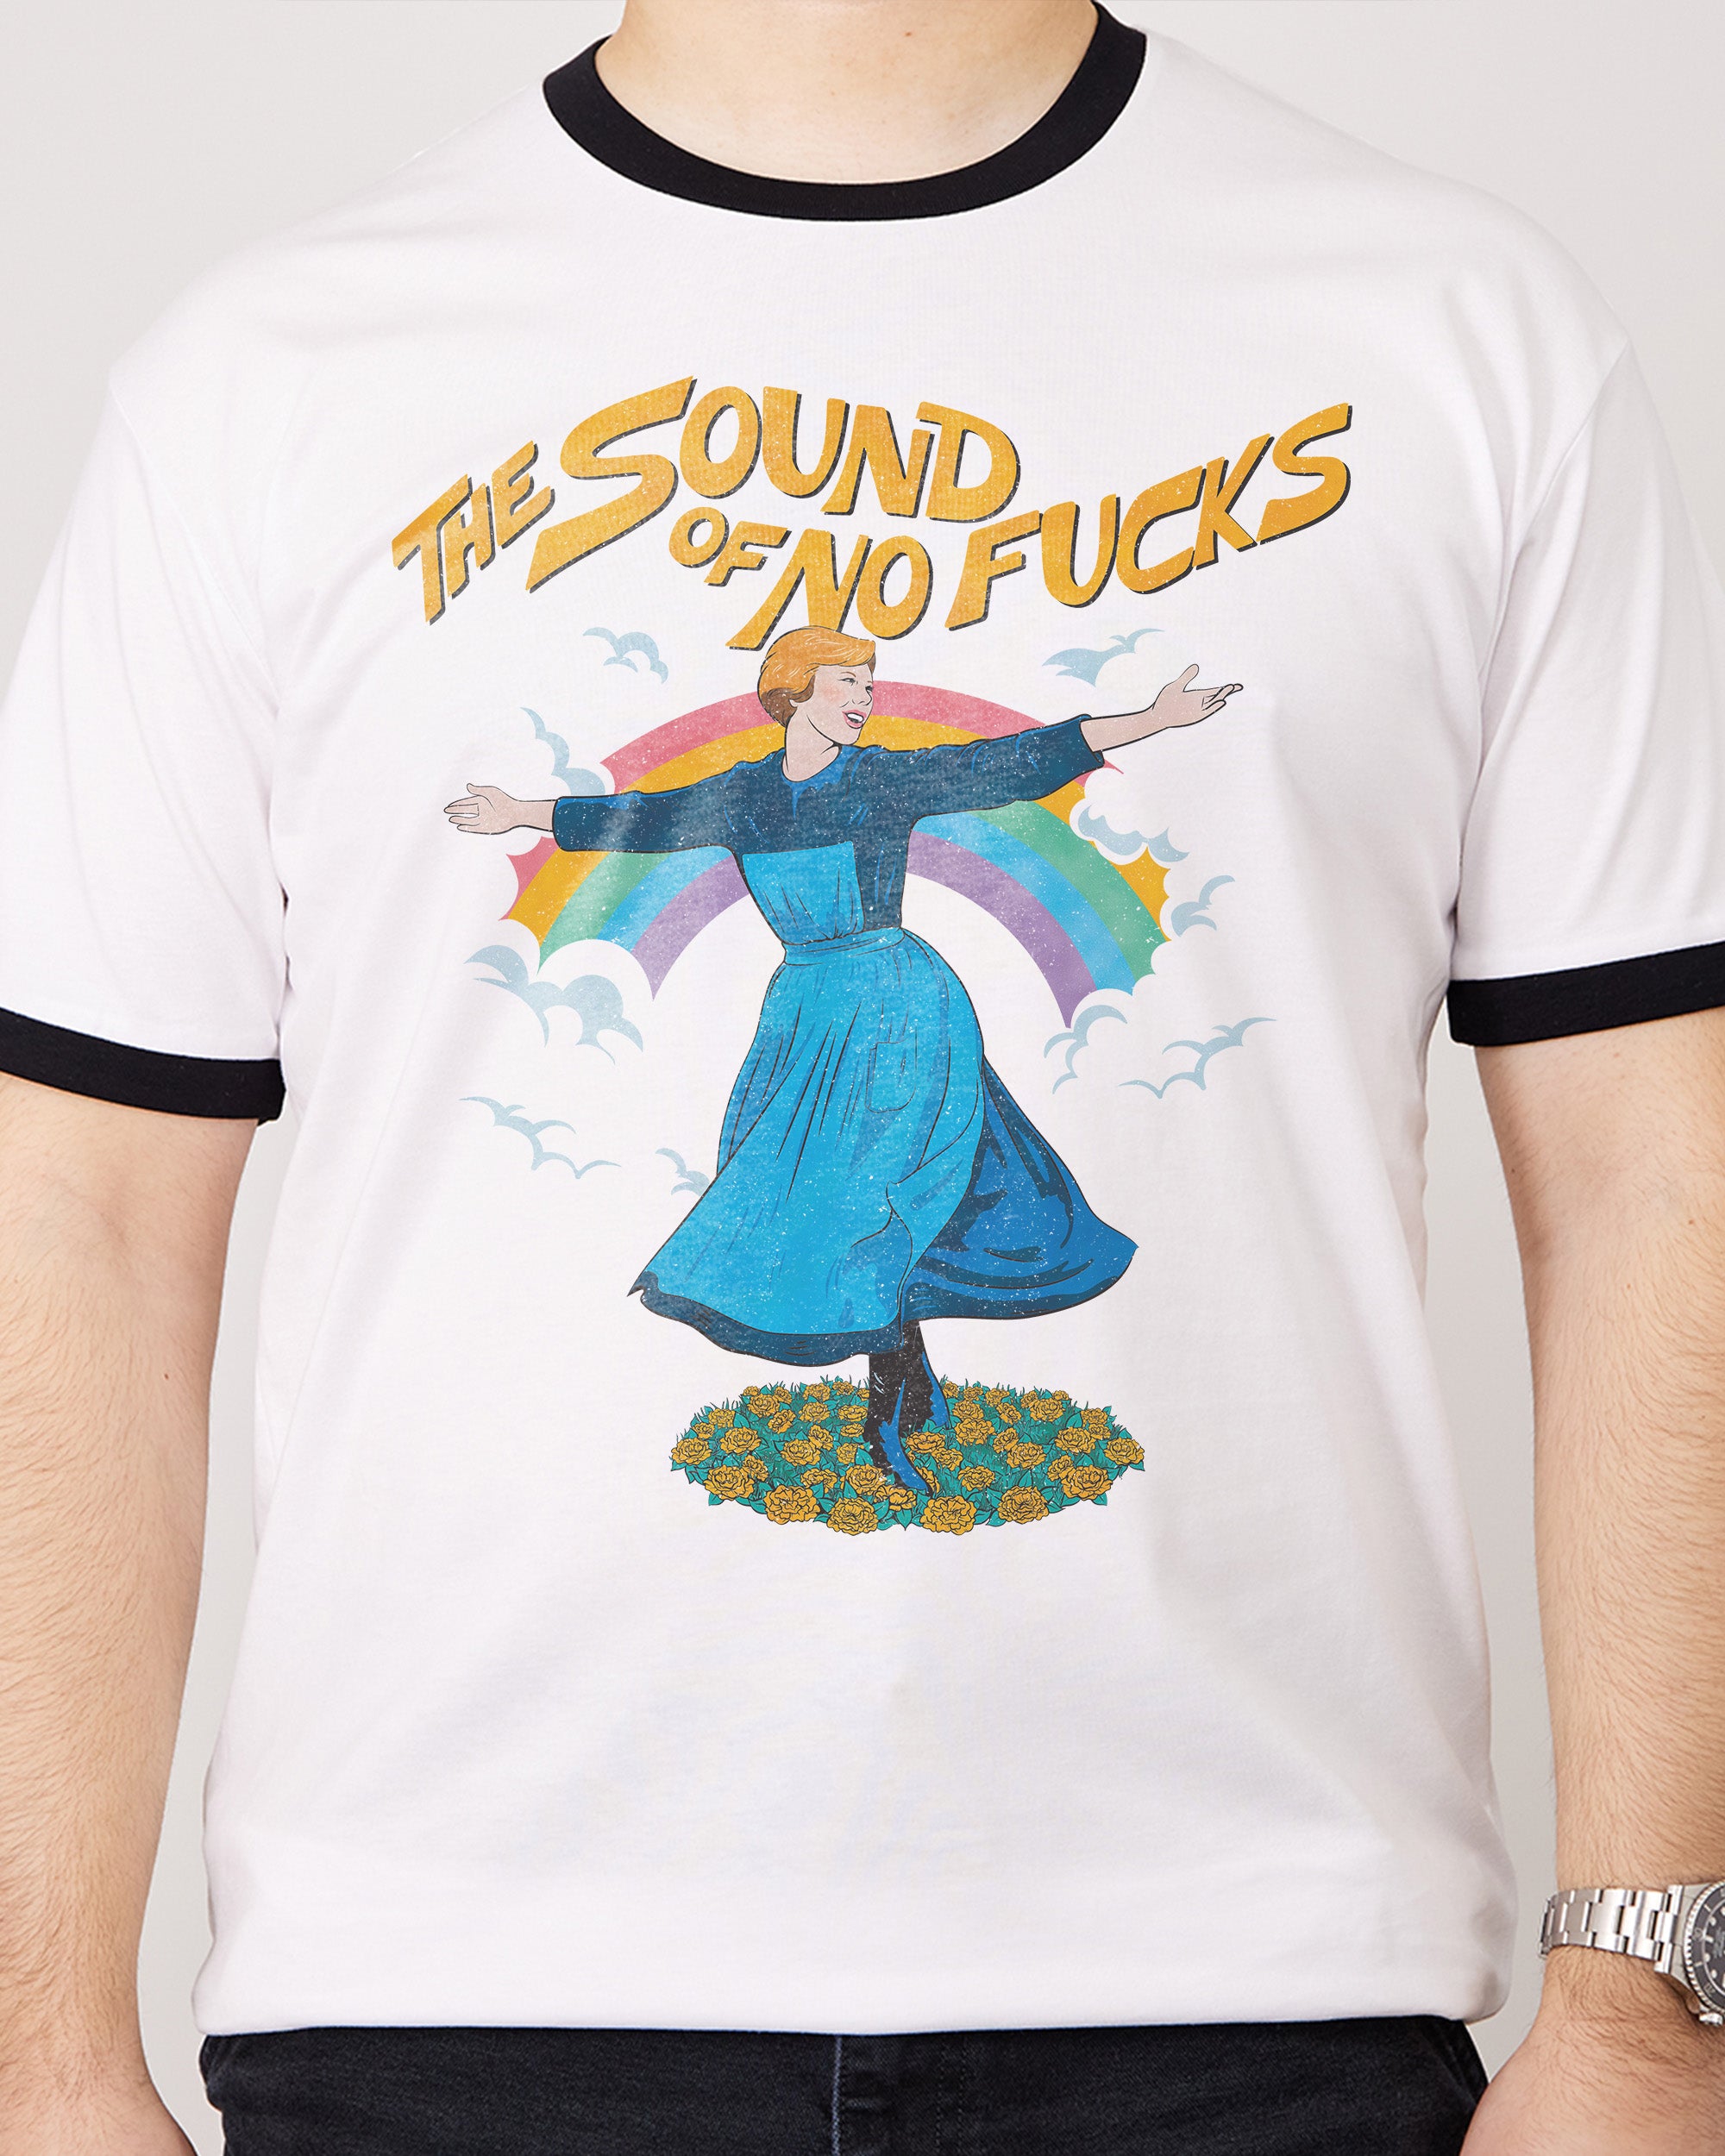 The Sound of No Fucks T-Shirt